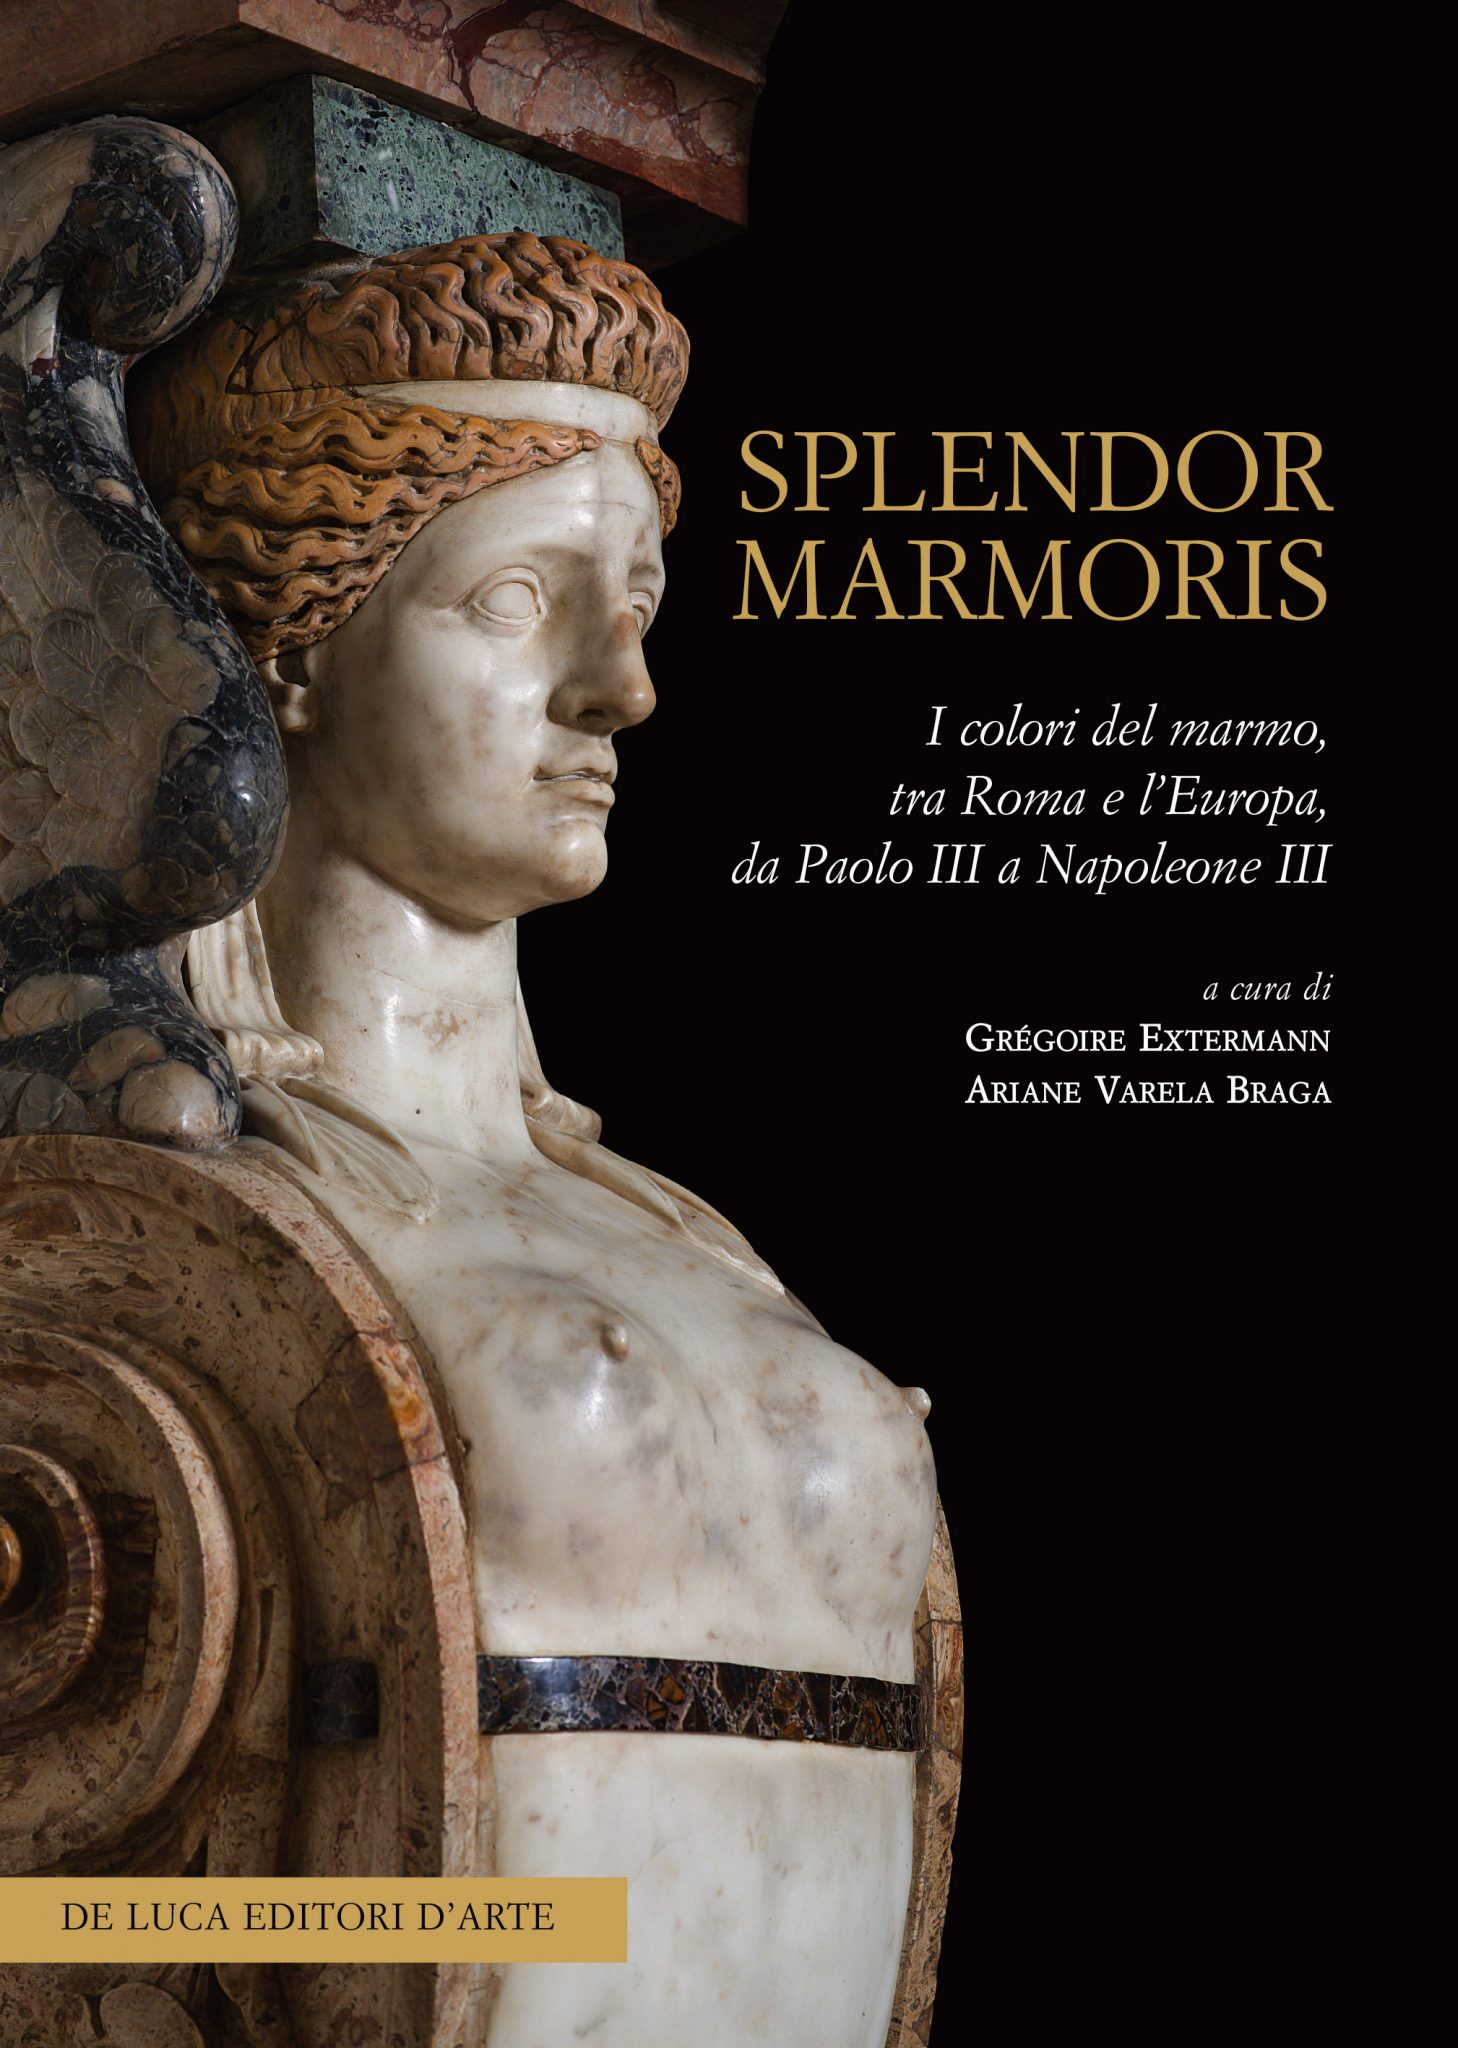 Splendor marmoris: I colori del marmo, tra Roma e l'Europa, da Paolo III a Napoleone III